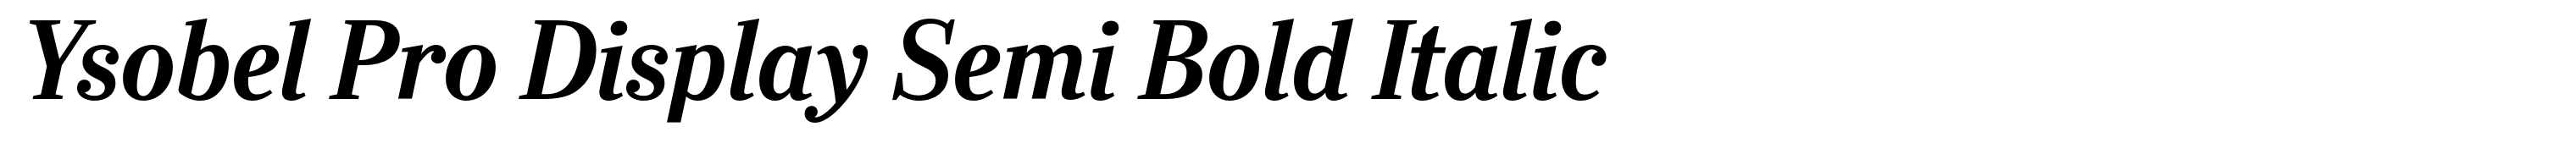 Ysobel Pro Display Semi Bold Italic